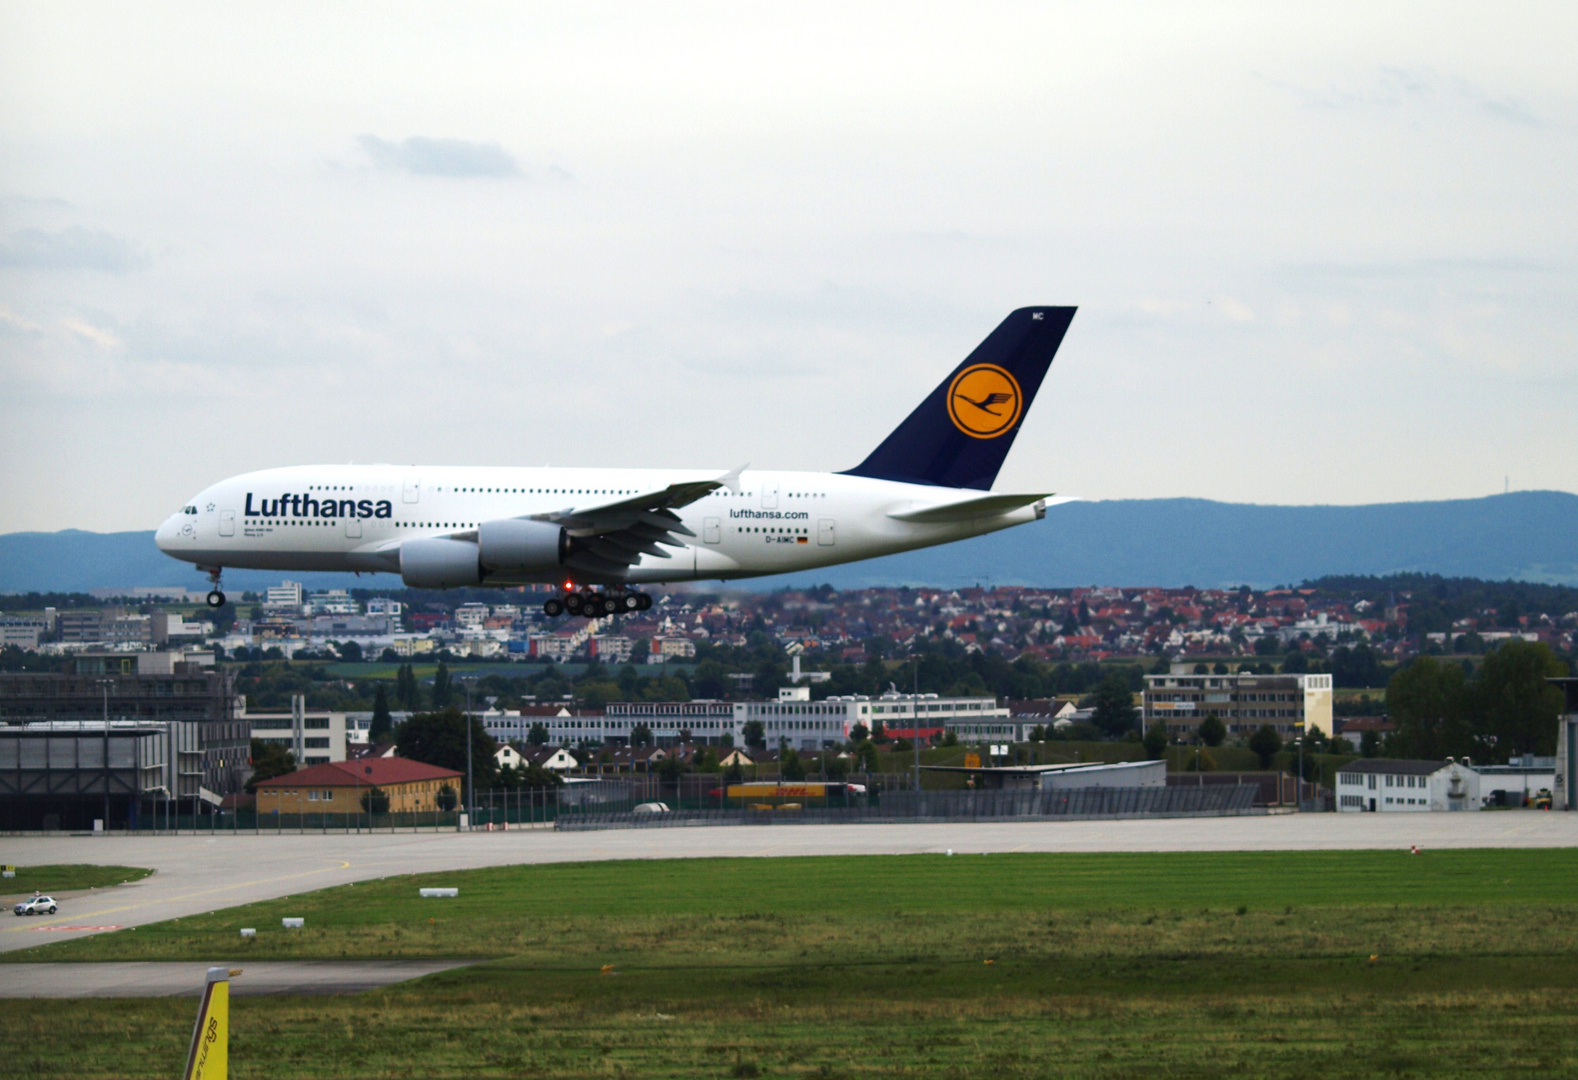 Airbus A 380 - 800 am 02.09.2010 bei der Landung auf dem Flughafen Stuttgart...